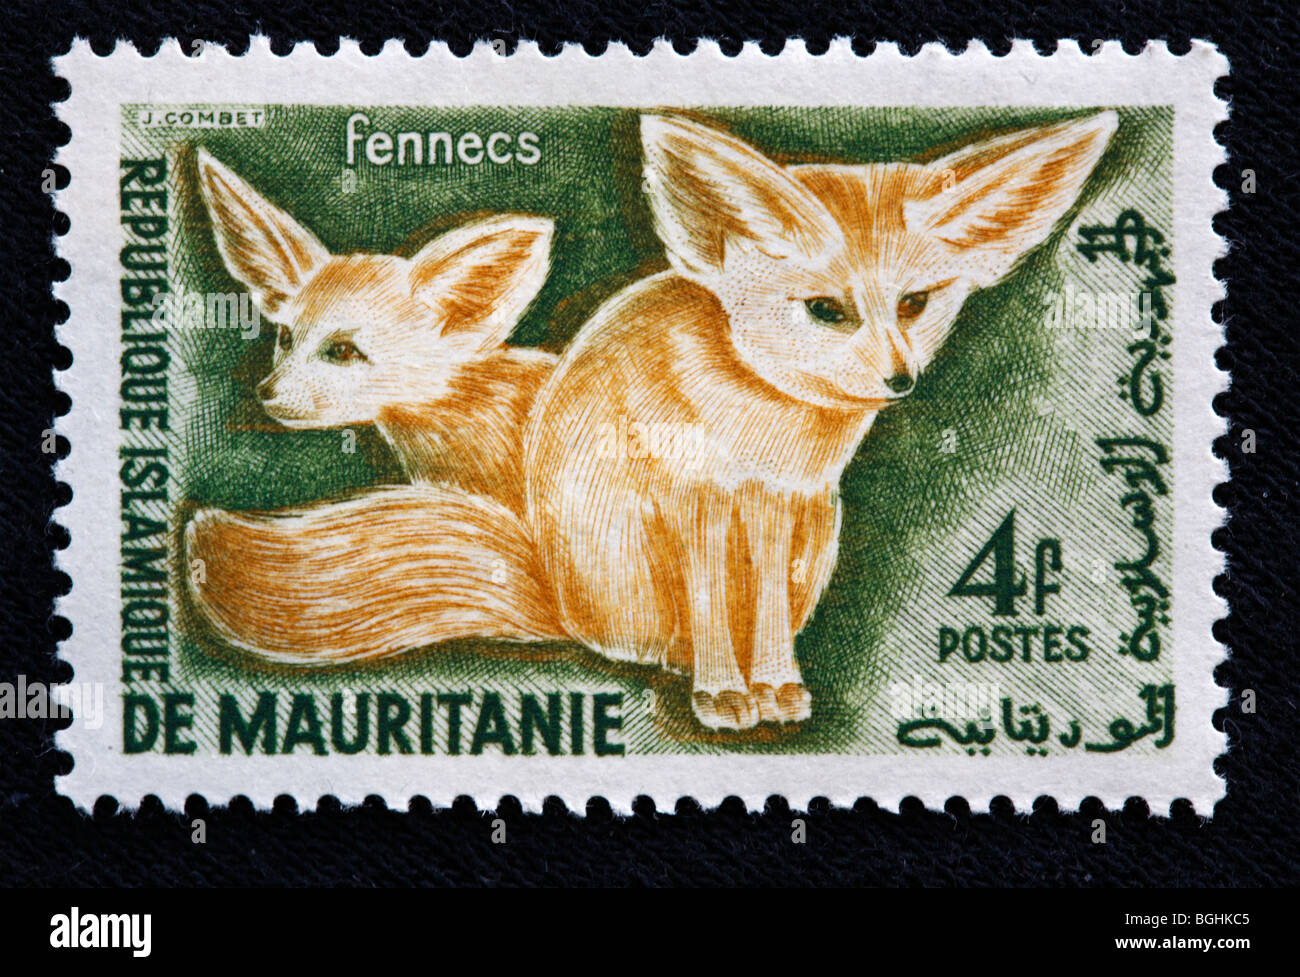 Fennecs, francobollo, Repubblica Mauritanie, 1970s Foto Stock